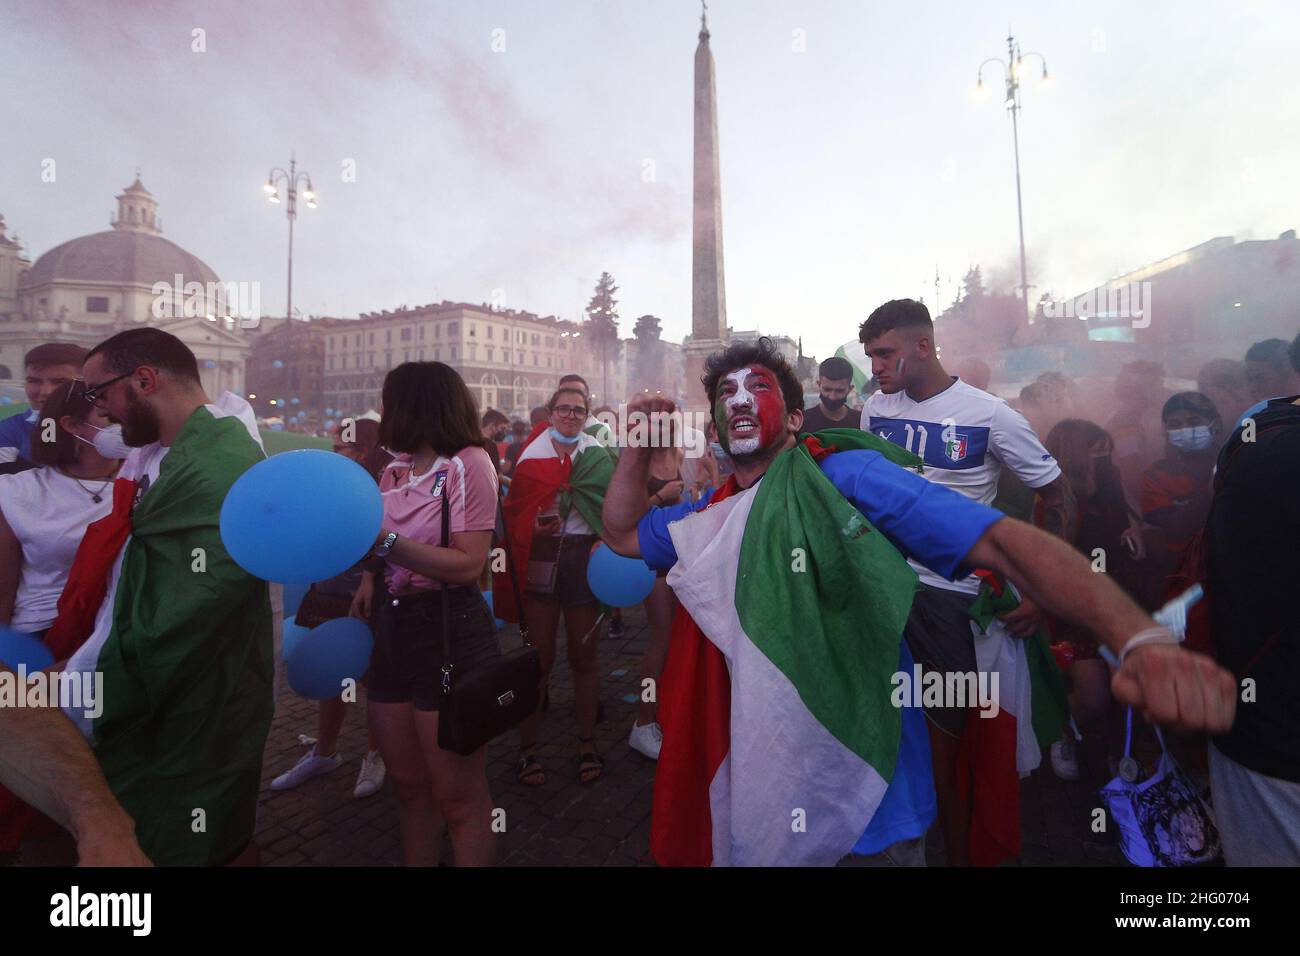 Cecilia Fabiano/ LaPresse July 02 , 2021 Roma (Italy) News : Italia Belgio football match at Piazza del Popolo Fan Zone In the Pic : the fans Stock Photo